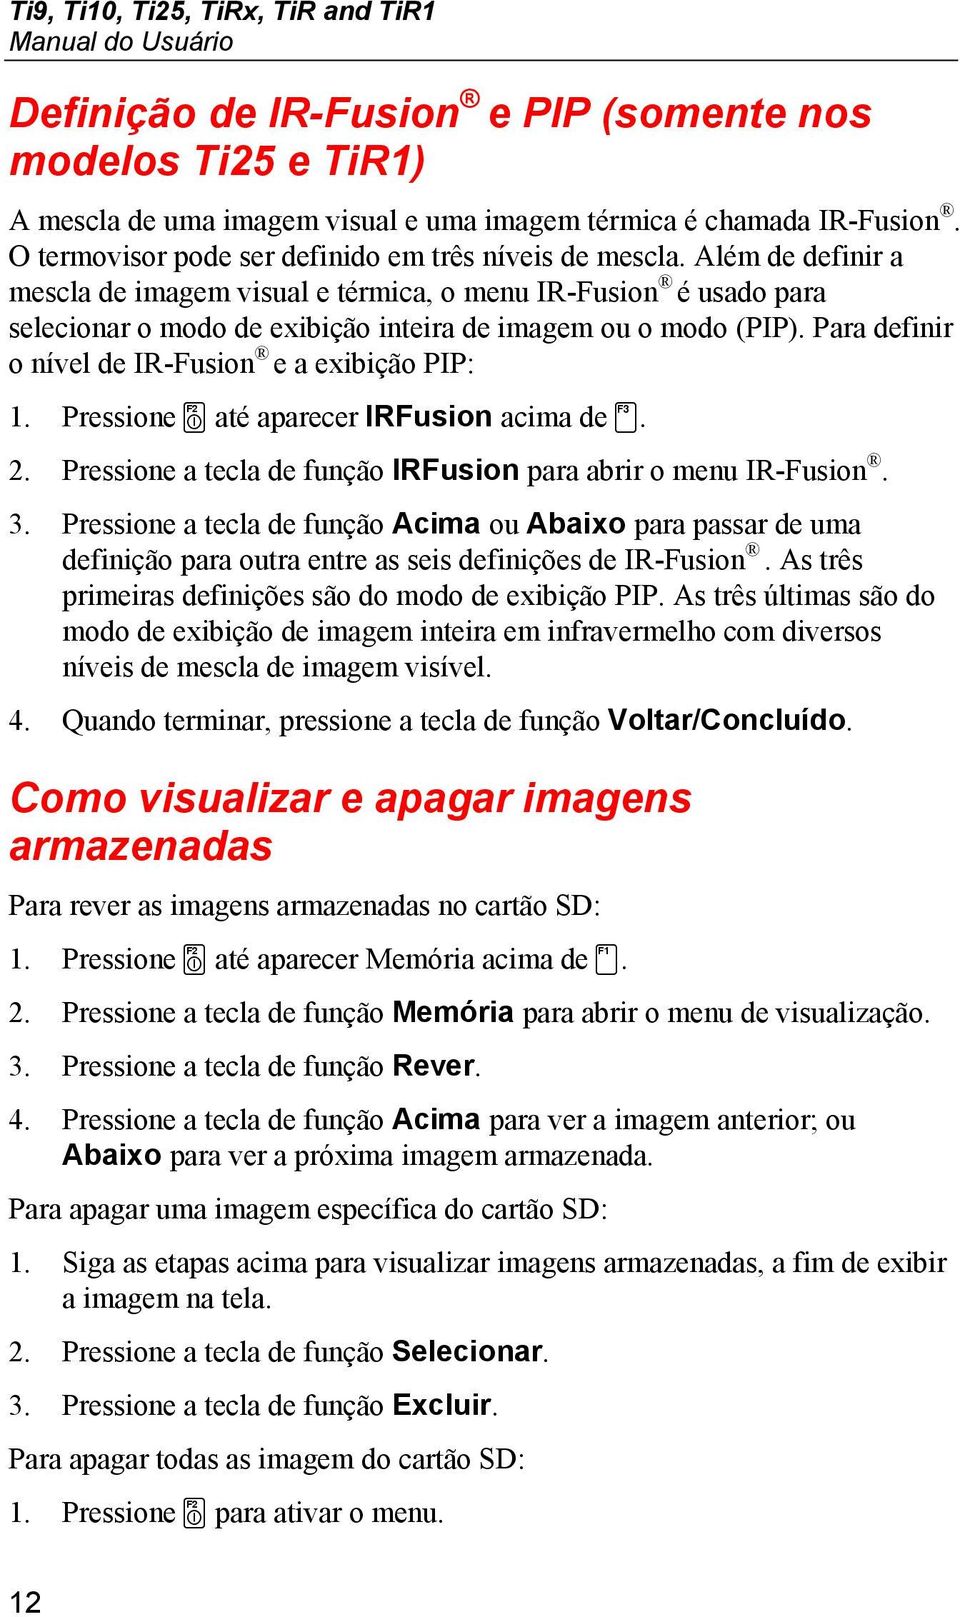 Além de definir a mescla de imagem visual e térmica, o menu IR-Fusion é usado para selecionar o modo de exibição inteira de imagem ou o modo (PIP).